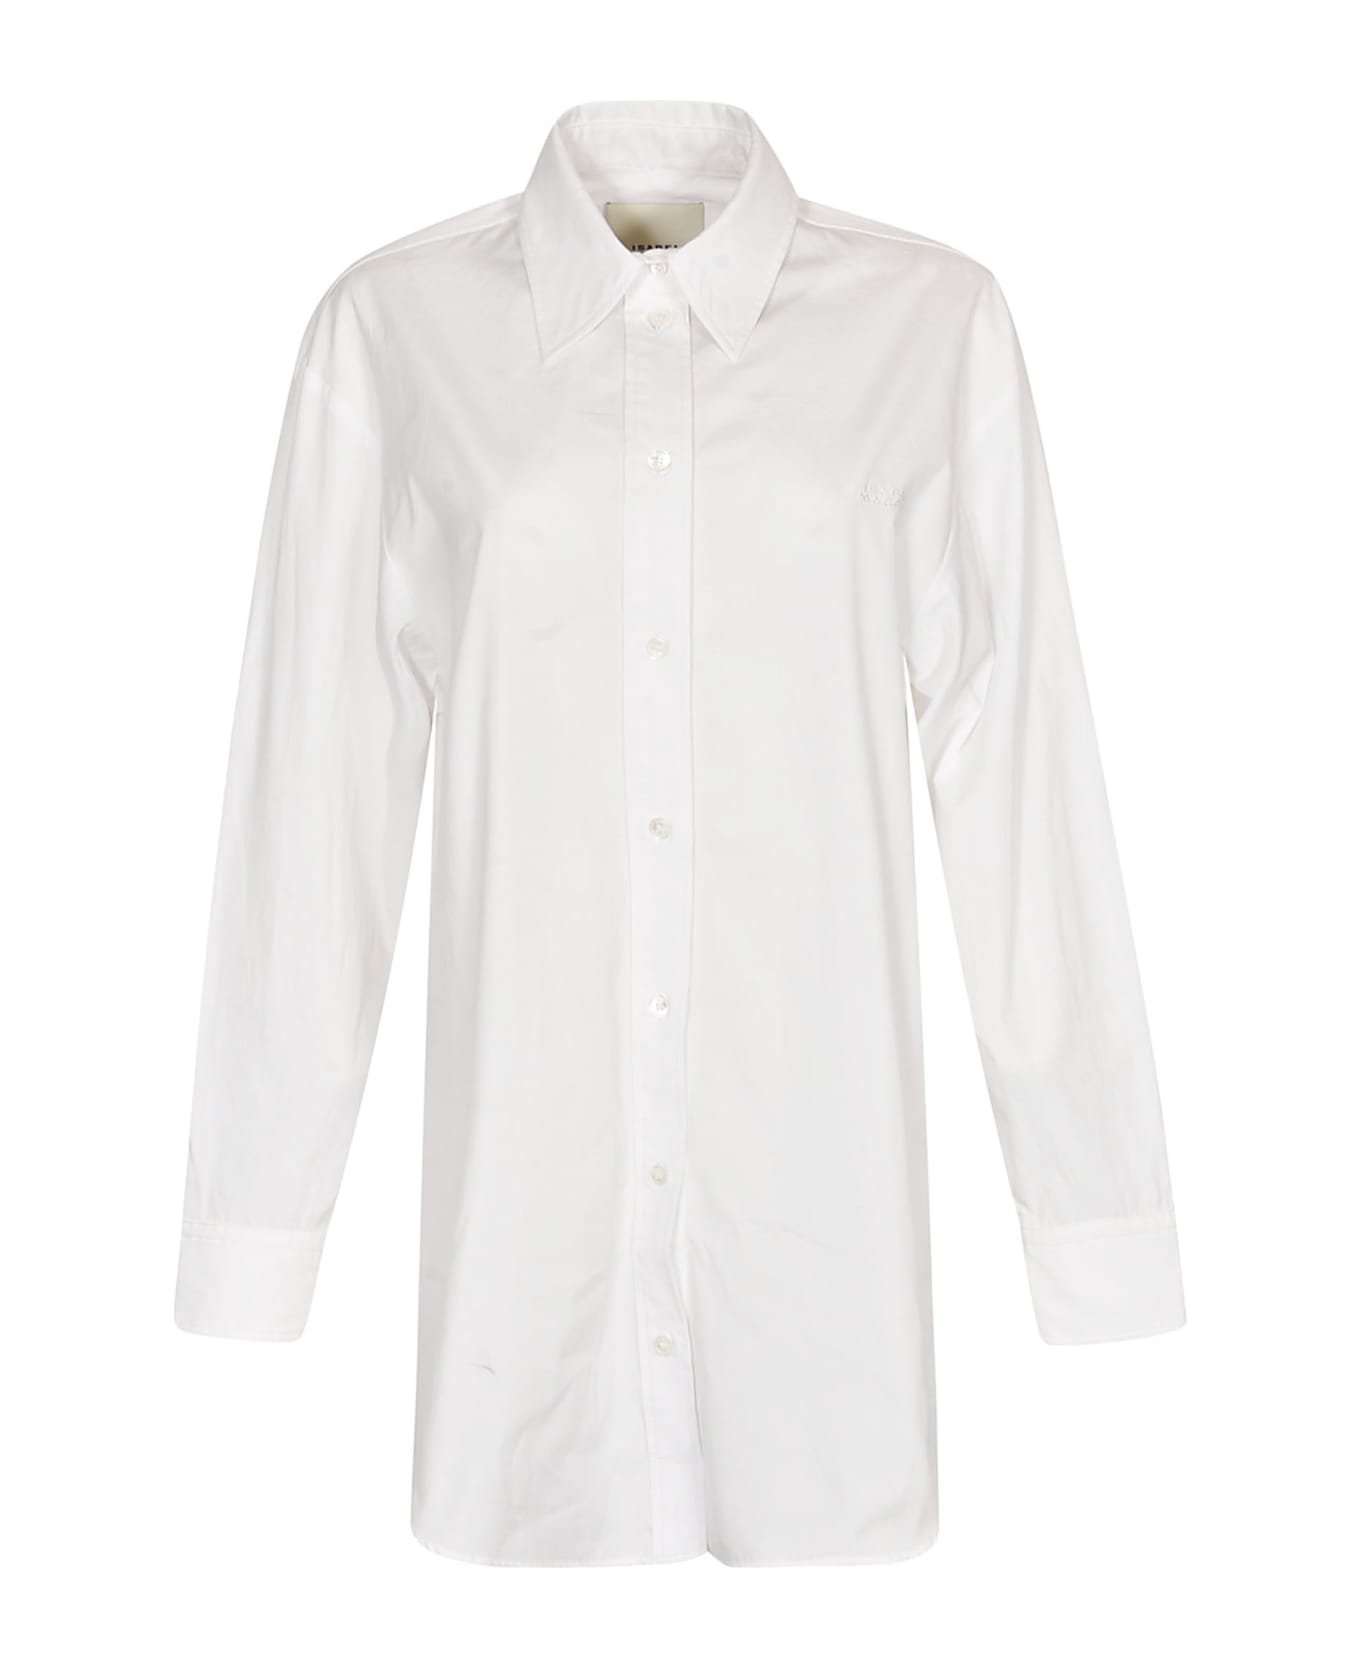 Isabel Marant Cylvany Shirt - White